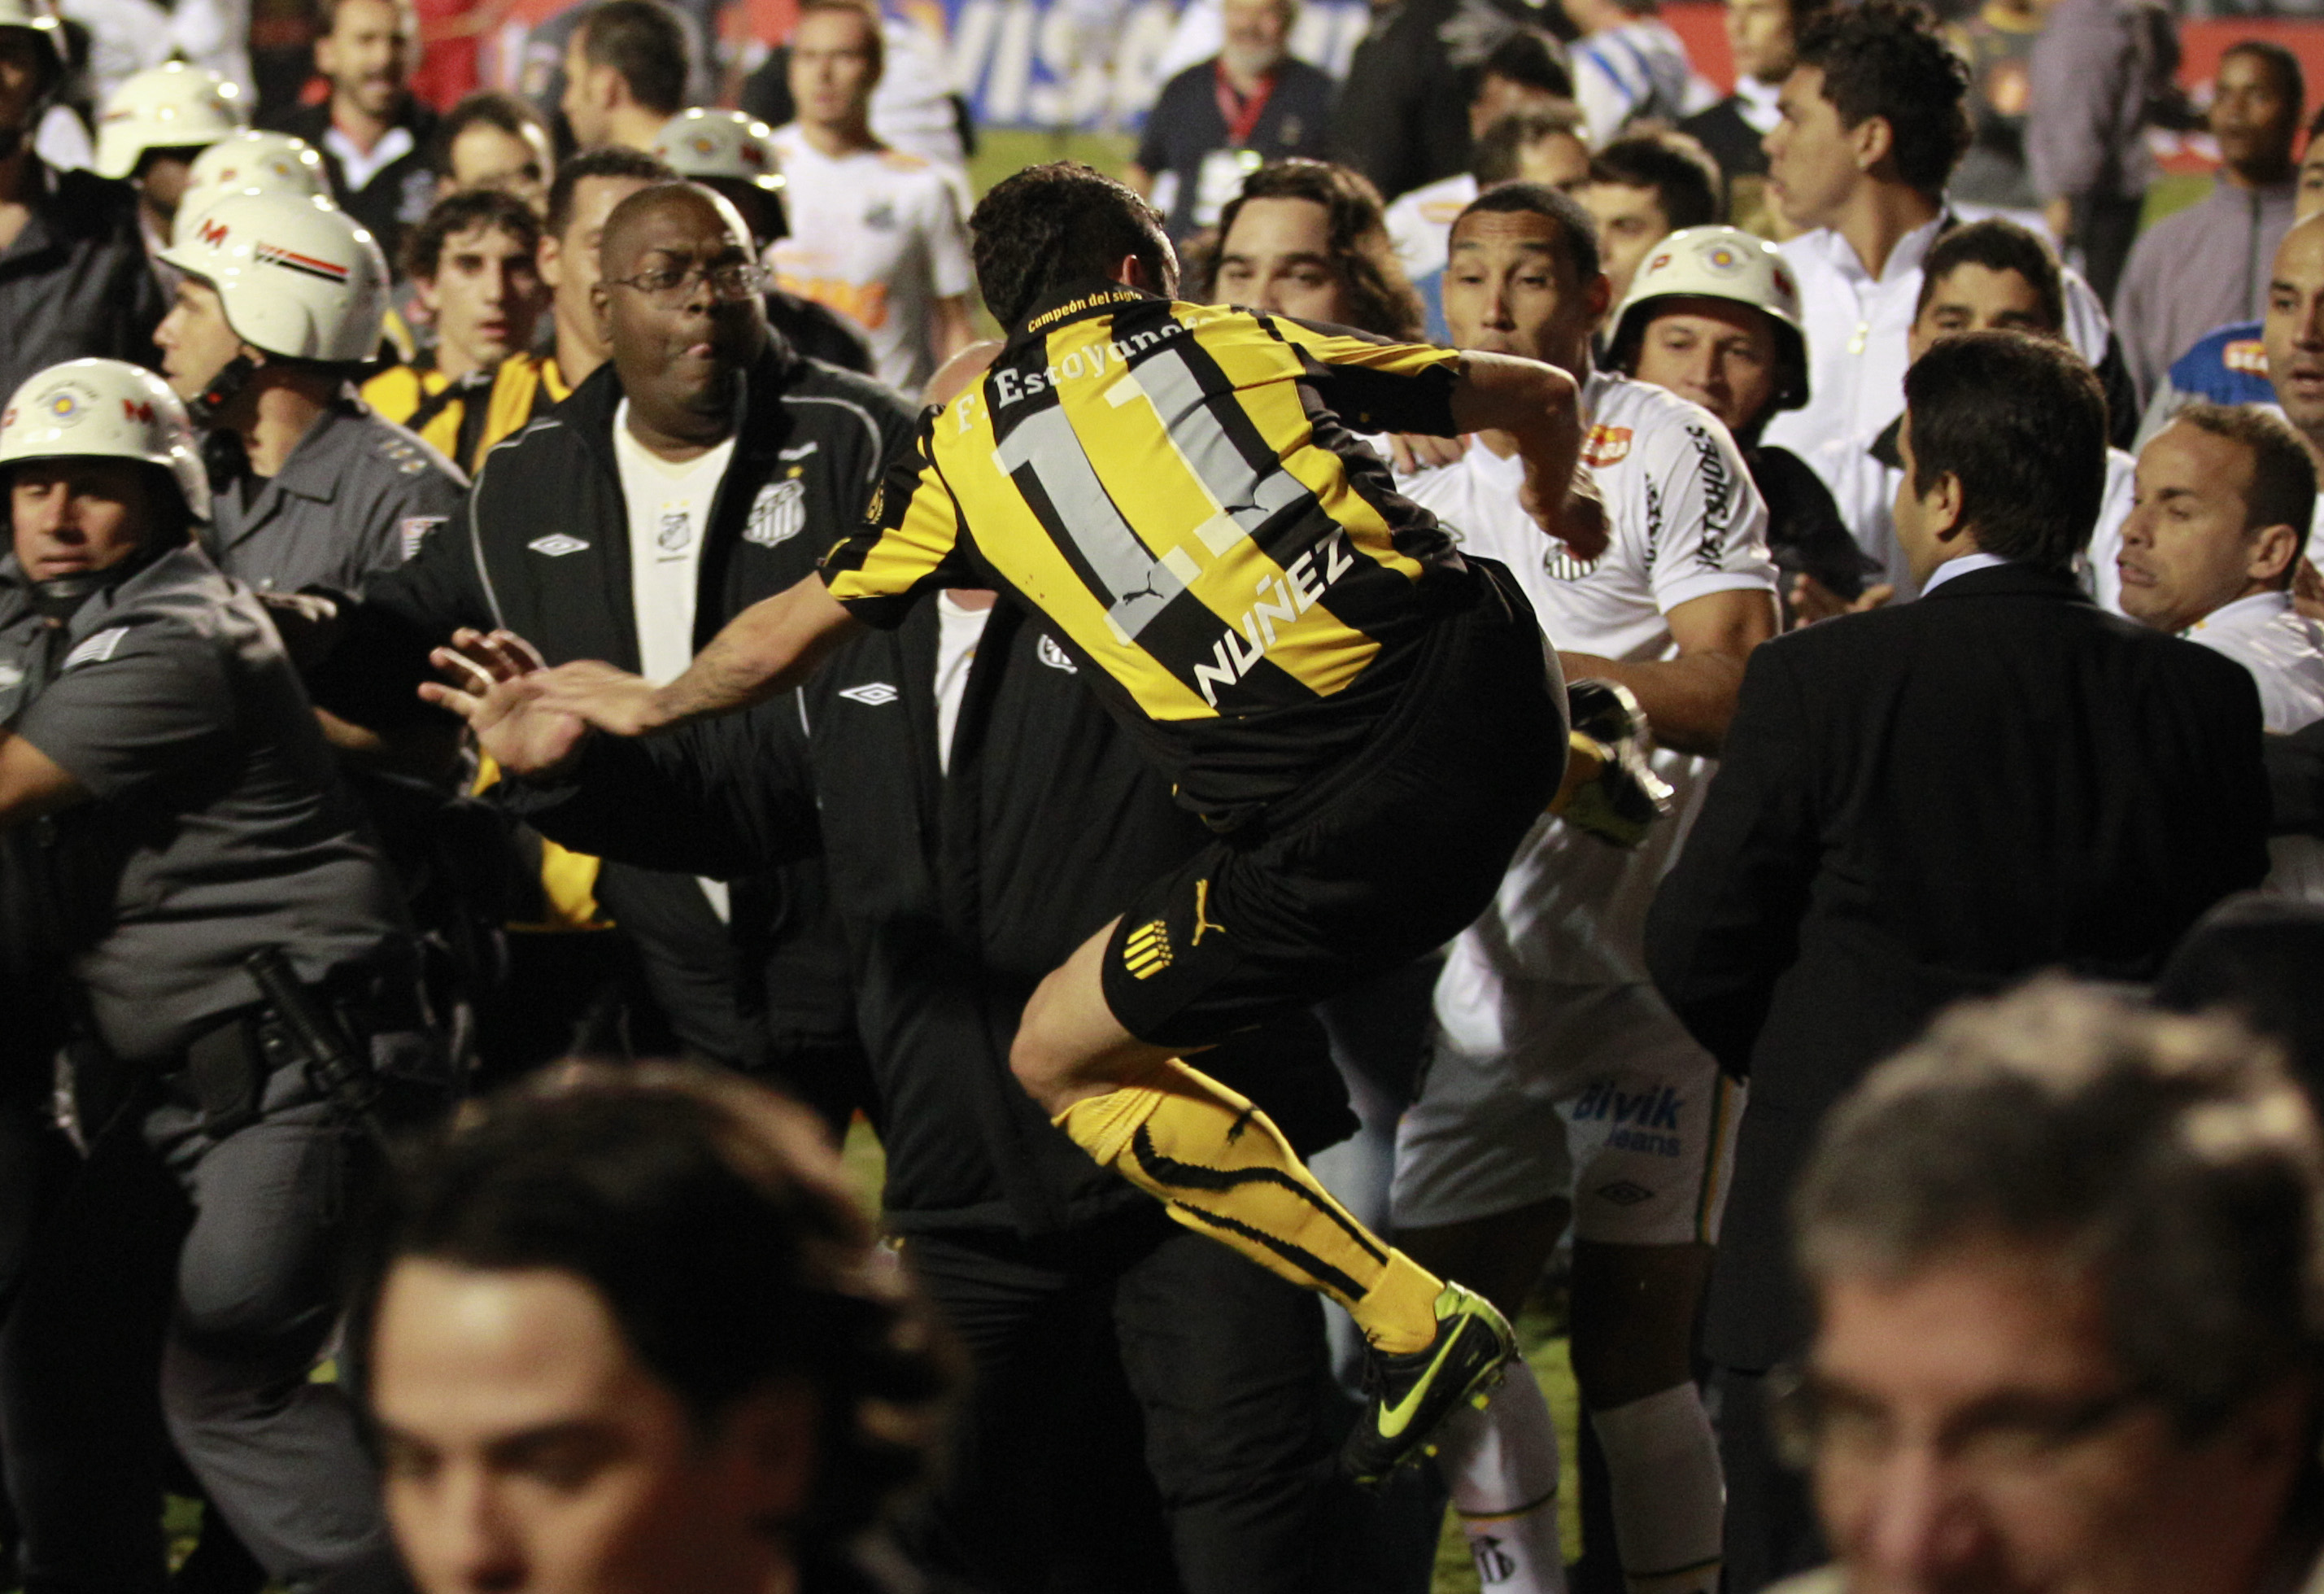 Ingen var bättre än den andre. Spelare från bådeClub Atlético Peñarol och Santos var högst delaktiga i kaoset.